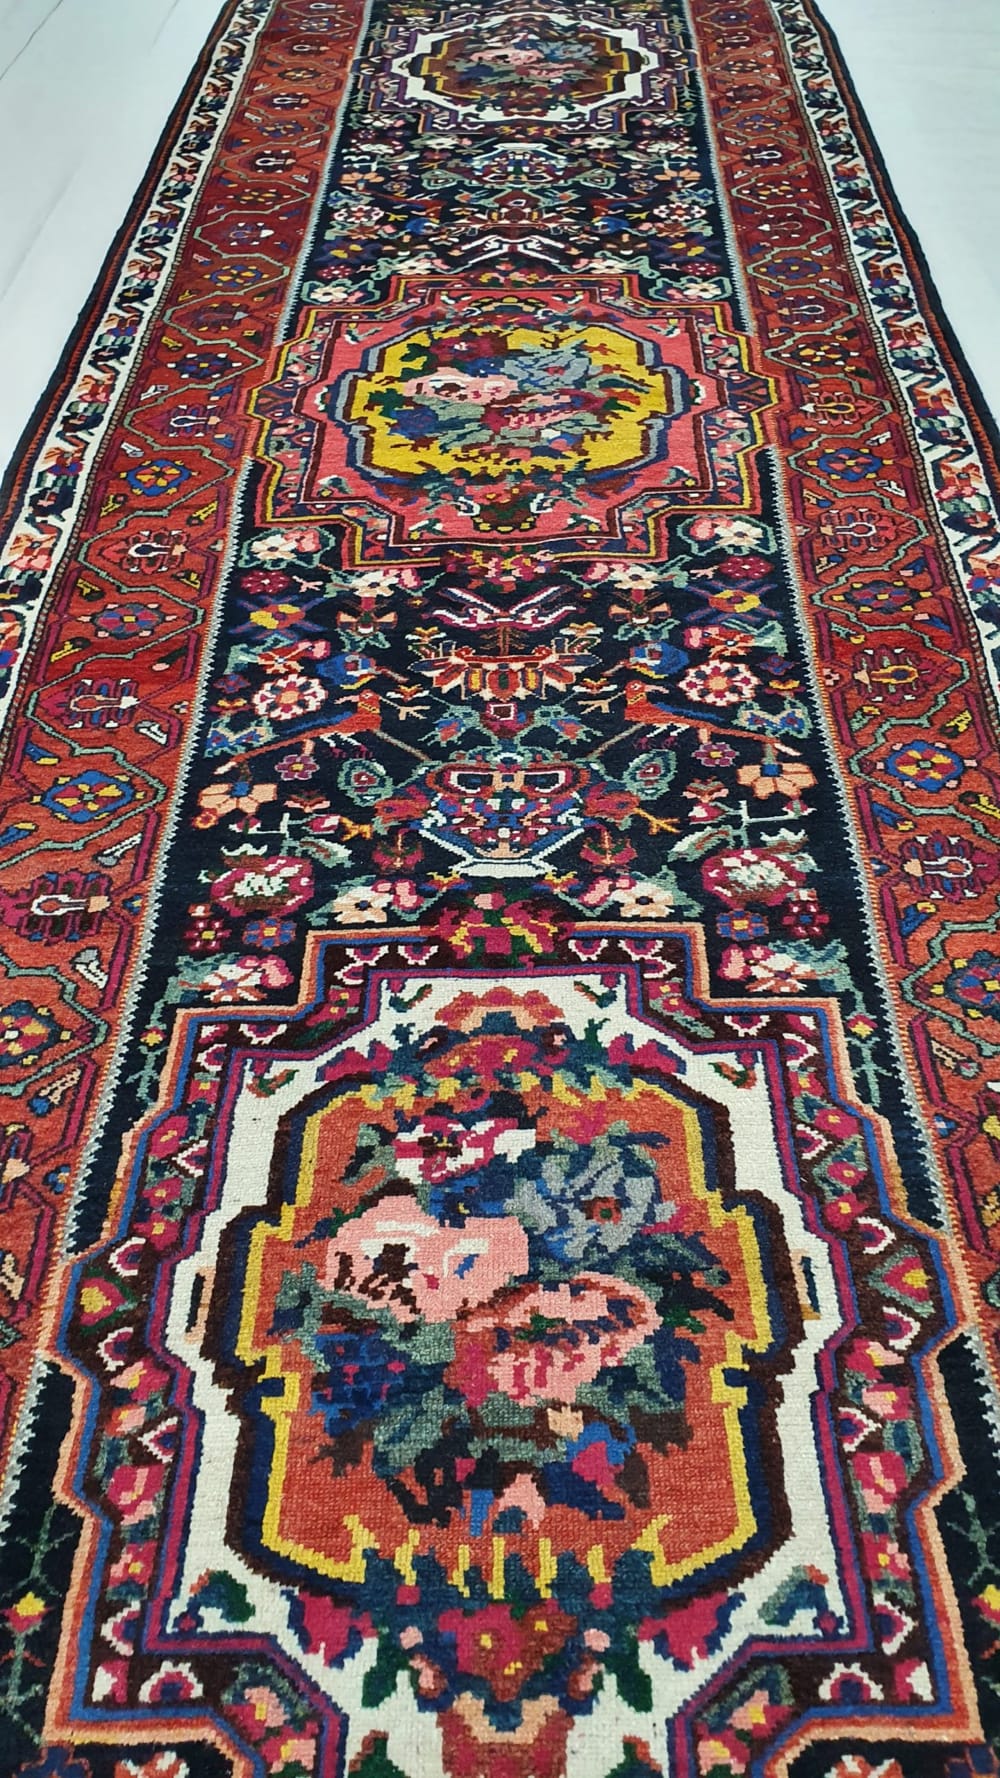 Lot 50, Antique Bakhtiar, Phradonbeh , Kurdi weave, collectable, c.1900, Persia, size 400x110 cm, RRP $12000 (4)